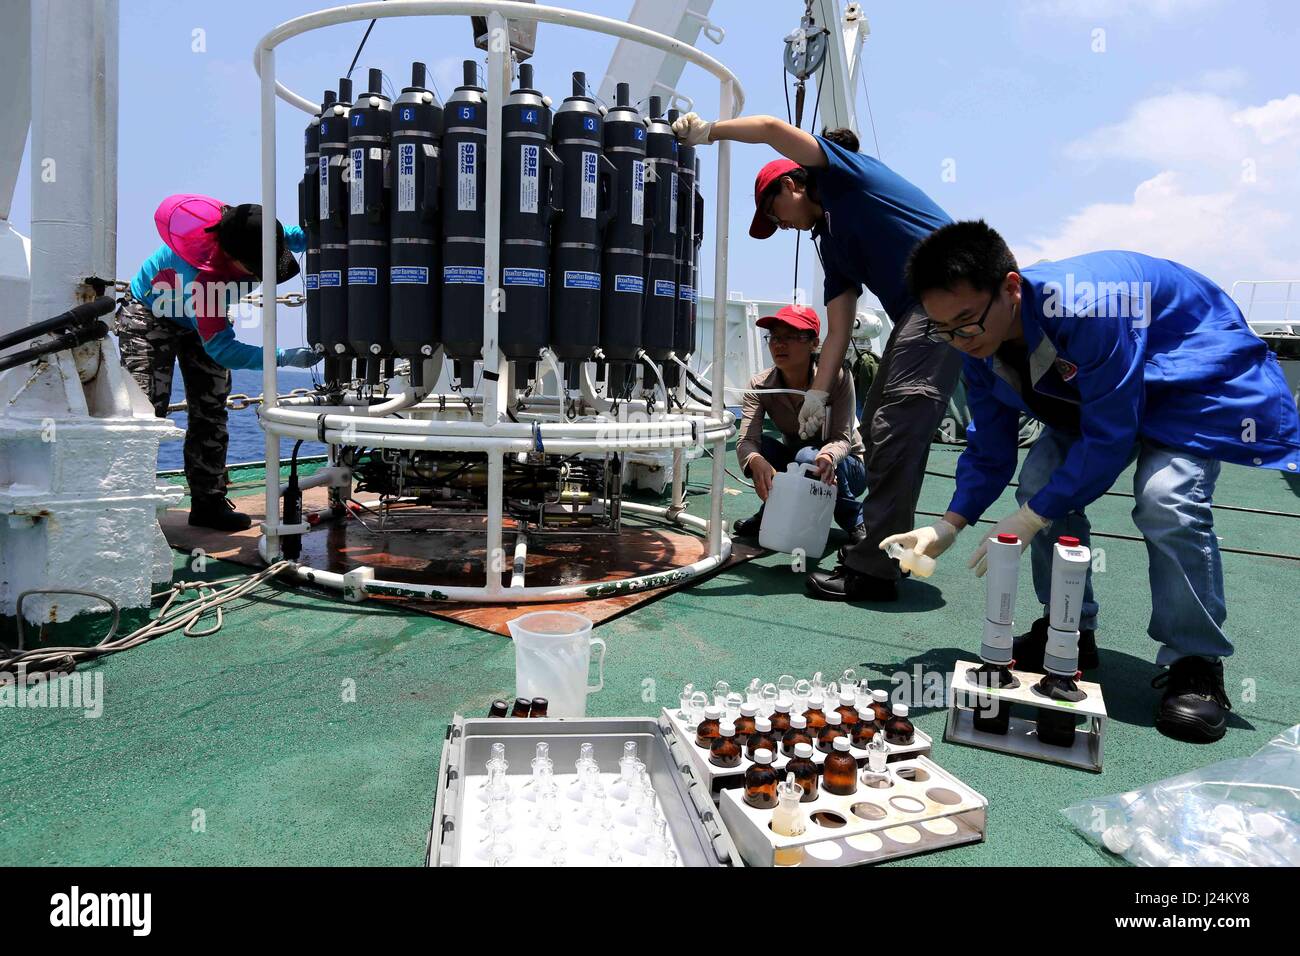 (170425) -- À BORD D'UN NAVIRE XIANGYANGHONG 09, 25 avril, 2017 (Xinhua) -- Les scientifiques examinent la température et salinité de l'eau de mer avec l'appareil à bord d'un navire Xiangyanghong 09 CTD dans la mer de Chine du Sud, sud de la Chine, le 25 avril 2017. Les scientifiques chinois ont entrepris une mission d'eau profonde en mer de Chine du Sud mardi, le début de la deuxième étape de la 38e expédition océanique. Le submersible habité Jiaolong avec son équipe de scientifiques sont arrivés à l'emplacement à bord du navire-mère Xiangyanghong 09. Le submersible devrait effectuer sa première plongée en mer de Chine du Sud le mercredi cette année Banque D'Images